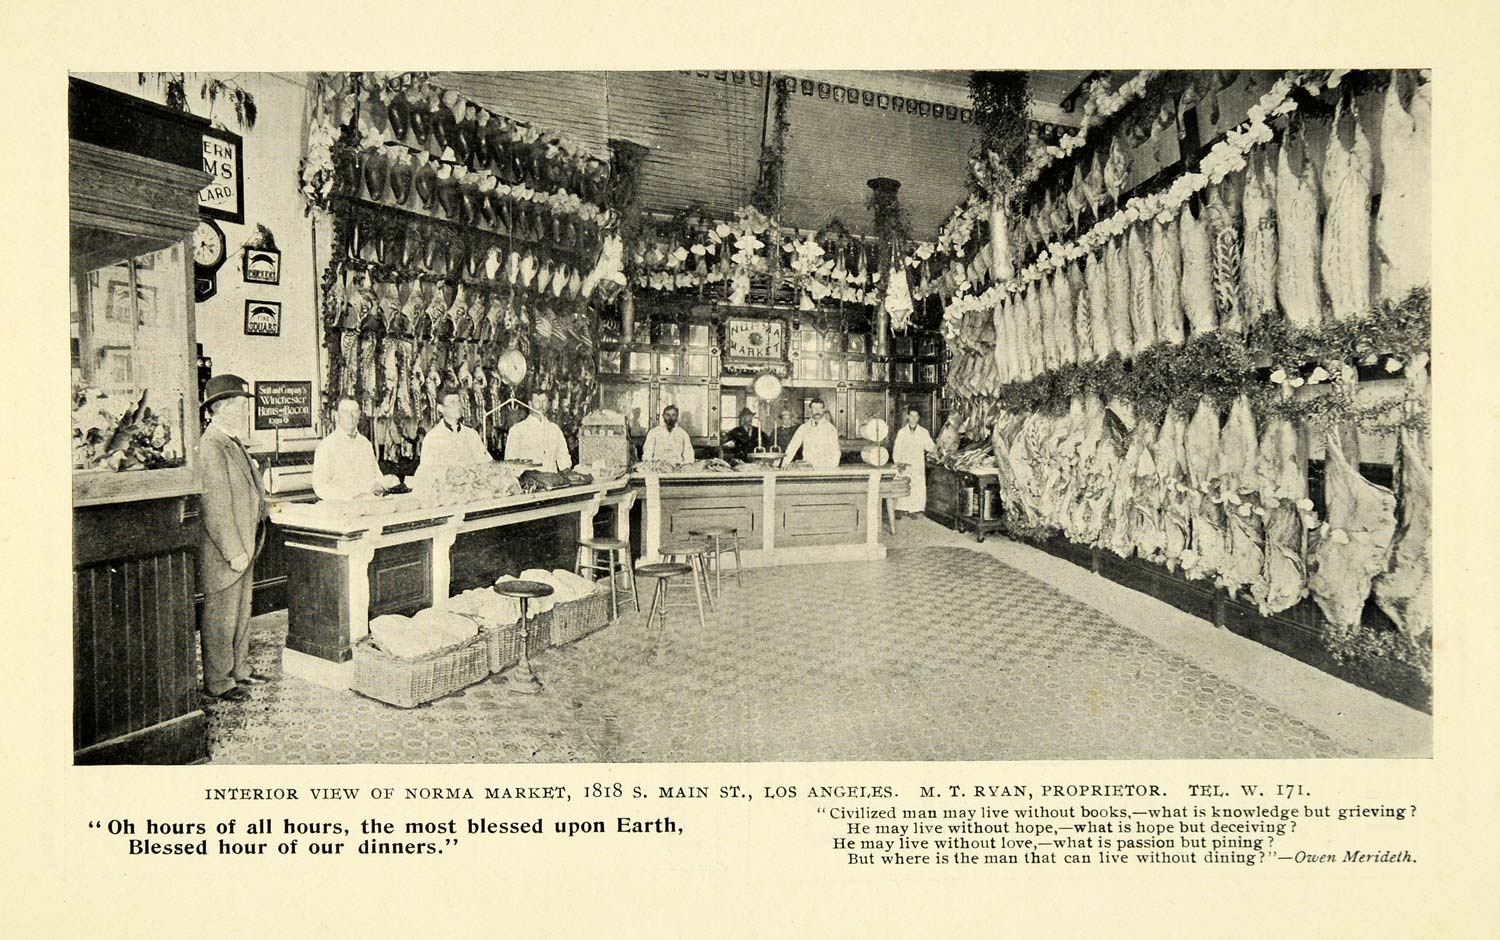 1899 Print Norma Market Interior Main St. Los Angeles - ORIGINAL HISTORIC LOS1